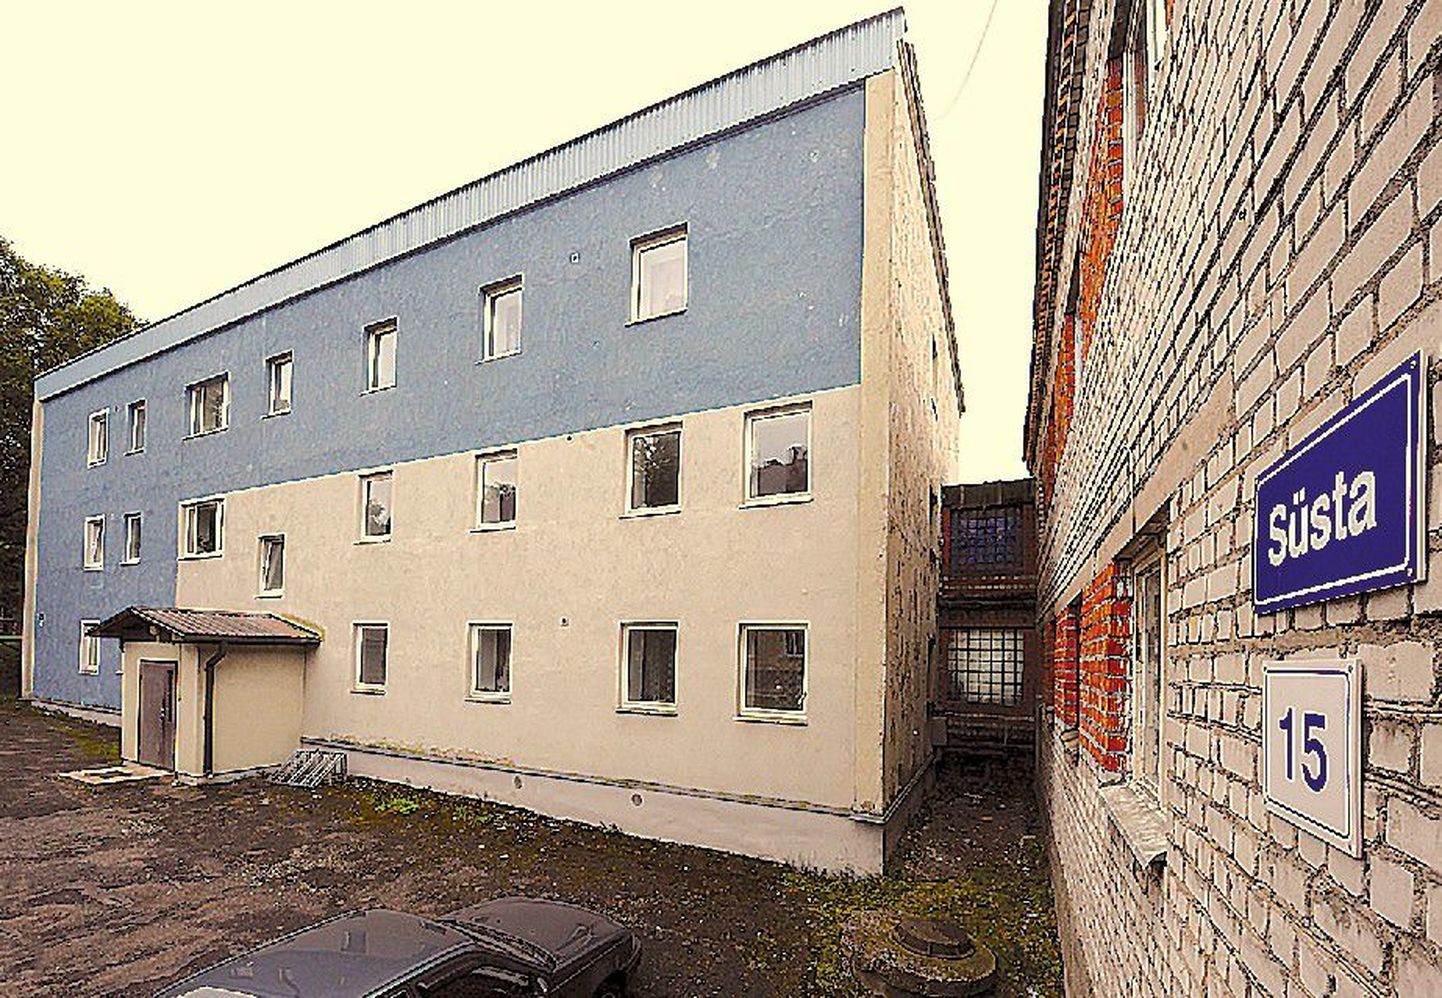 Служебные квартиры работников погранохраны находятся в Пыхья-Таллинне на улице Сюста.